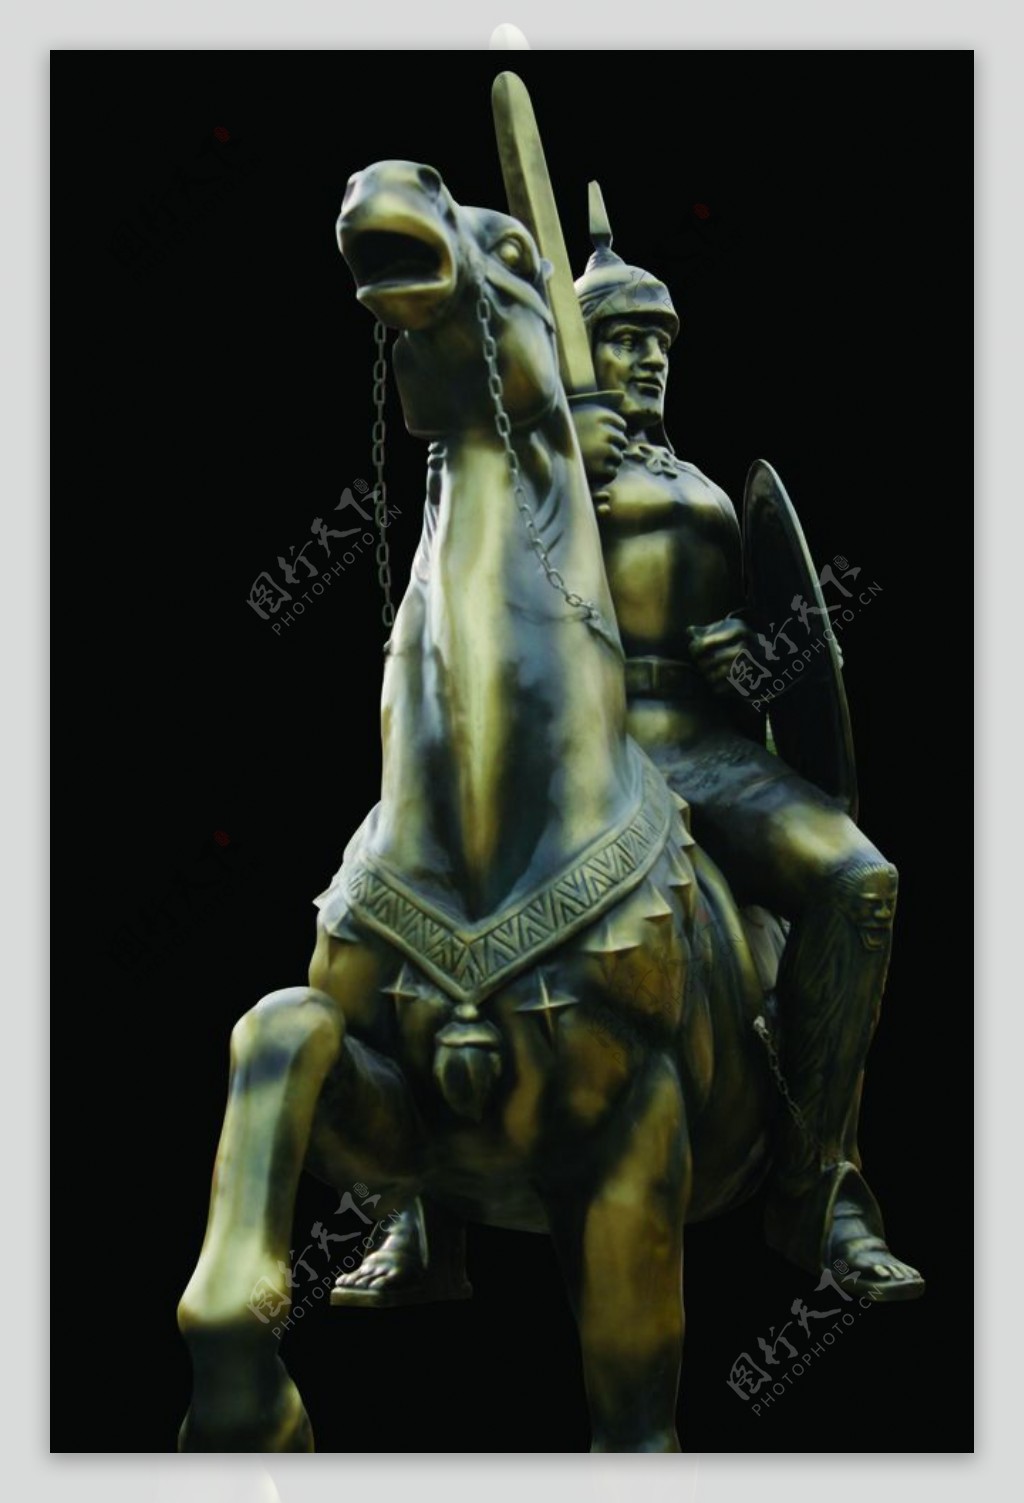 雕塑骑士罗马武士